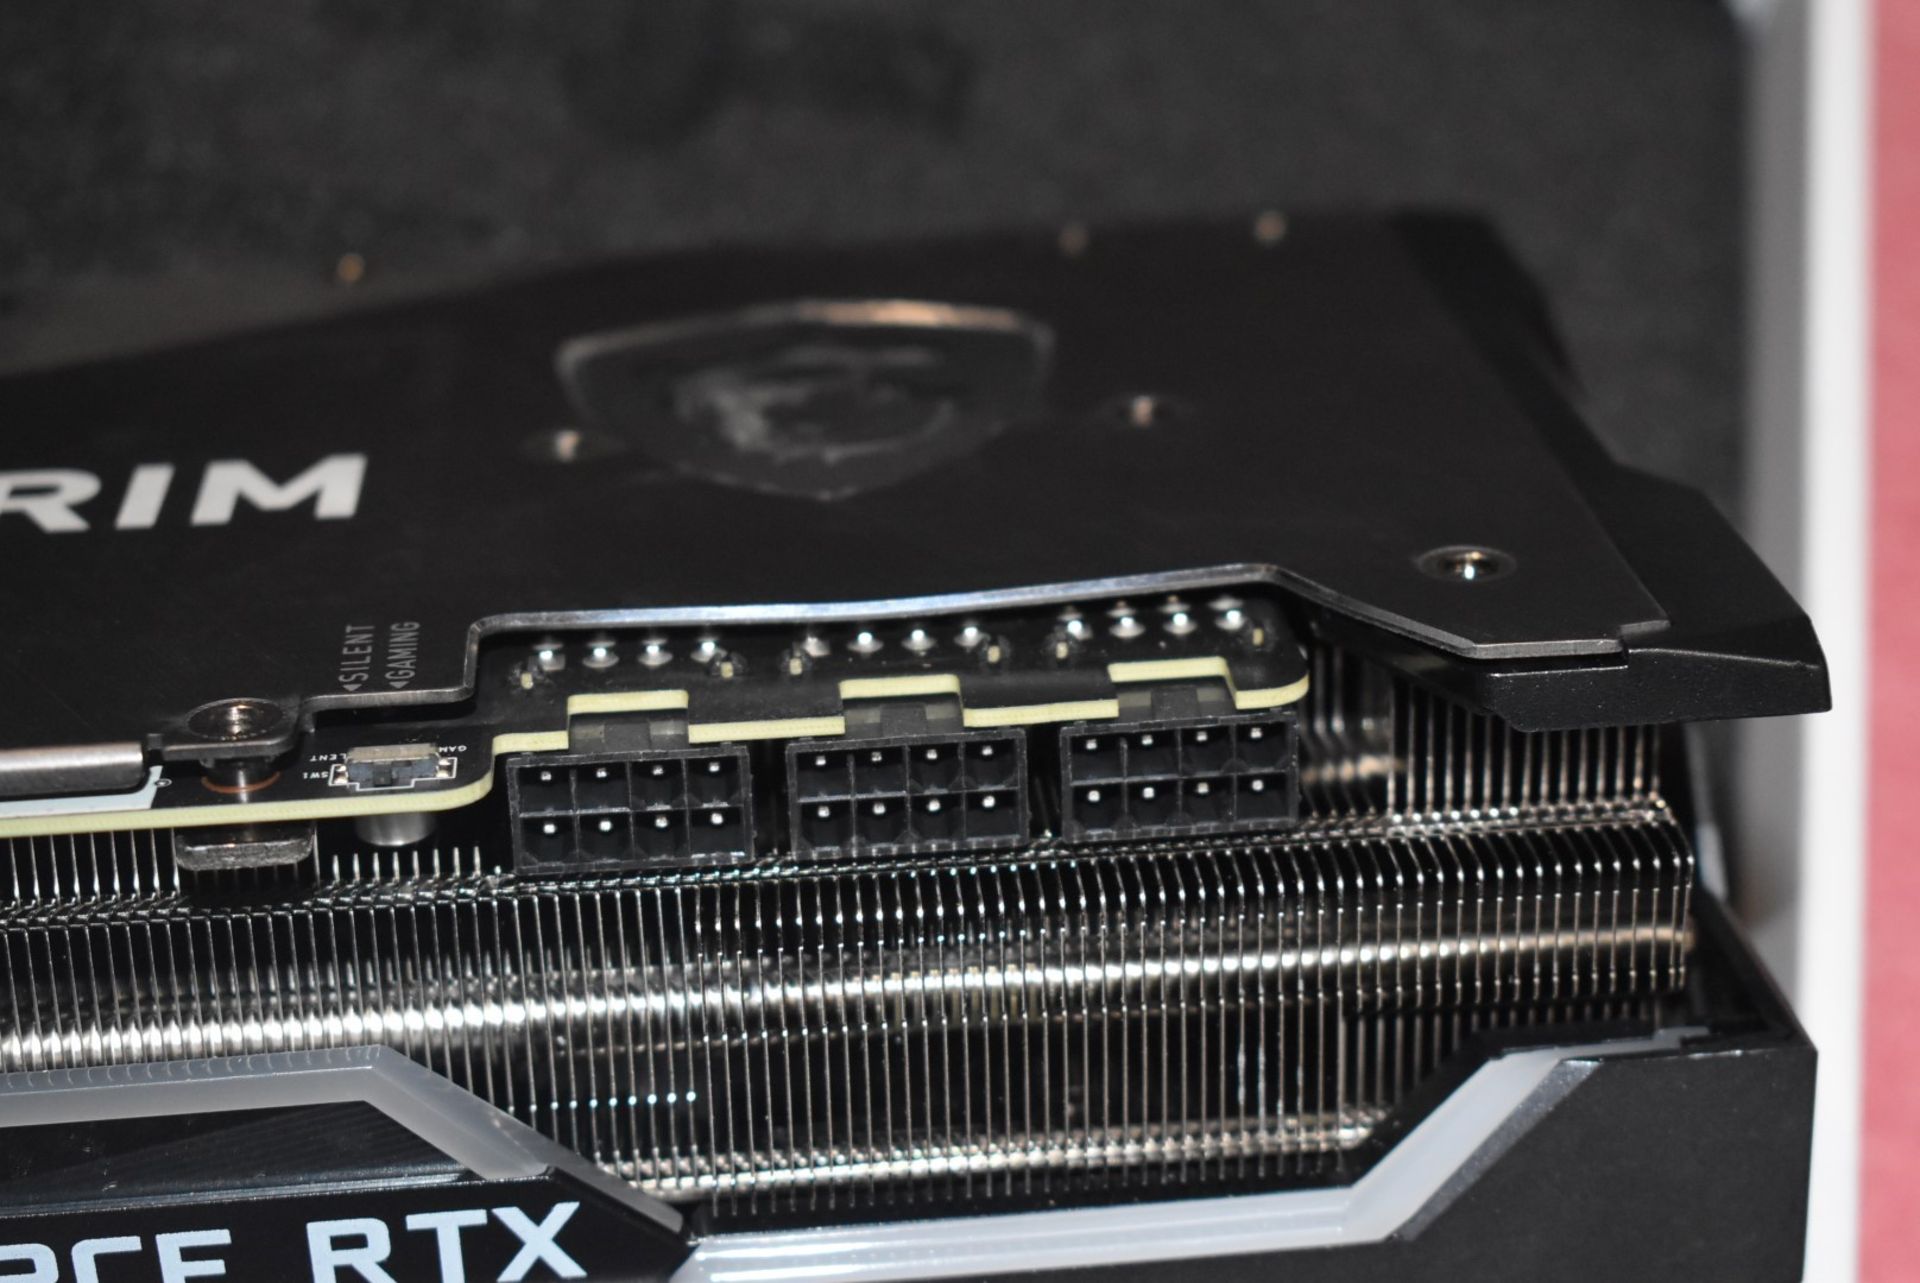 1 x MSI SuprimX Geforce RTX3080 10GB Graphics Card - Spares or Repairs - Bild 11 aus 13